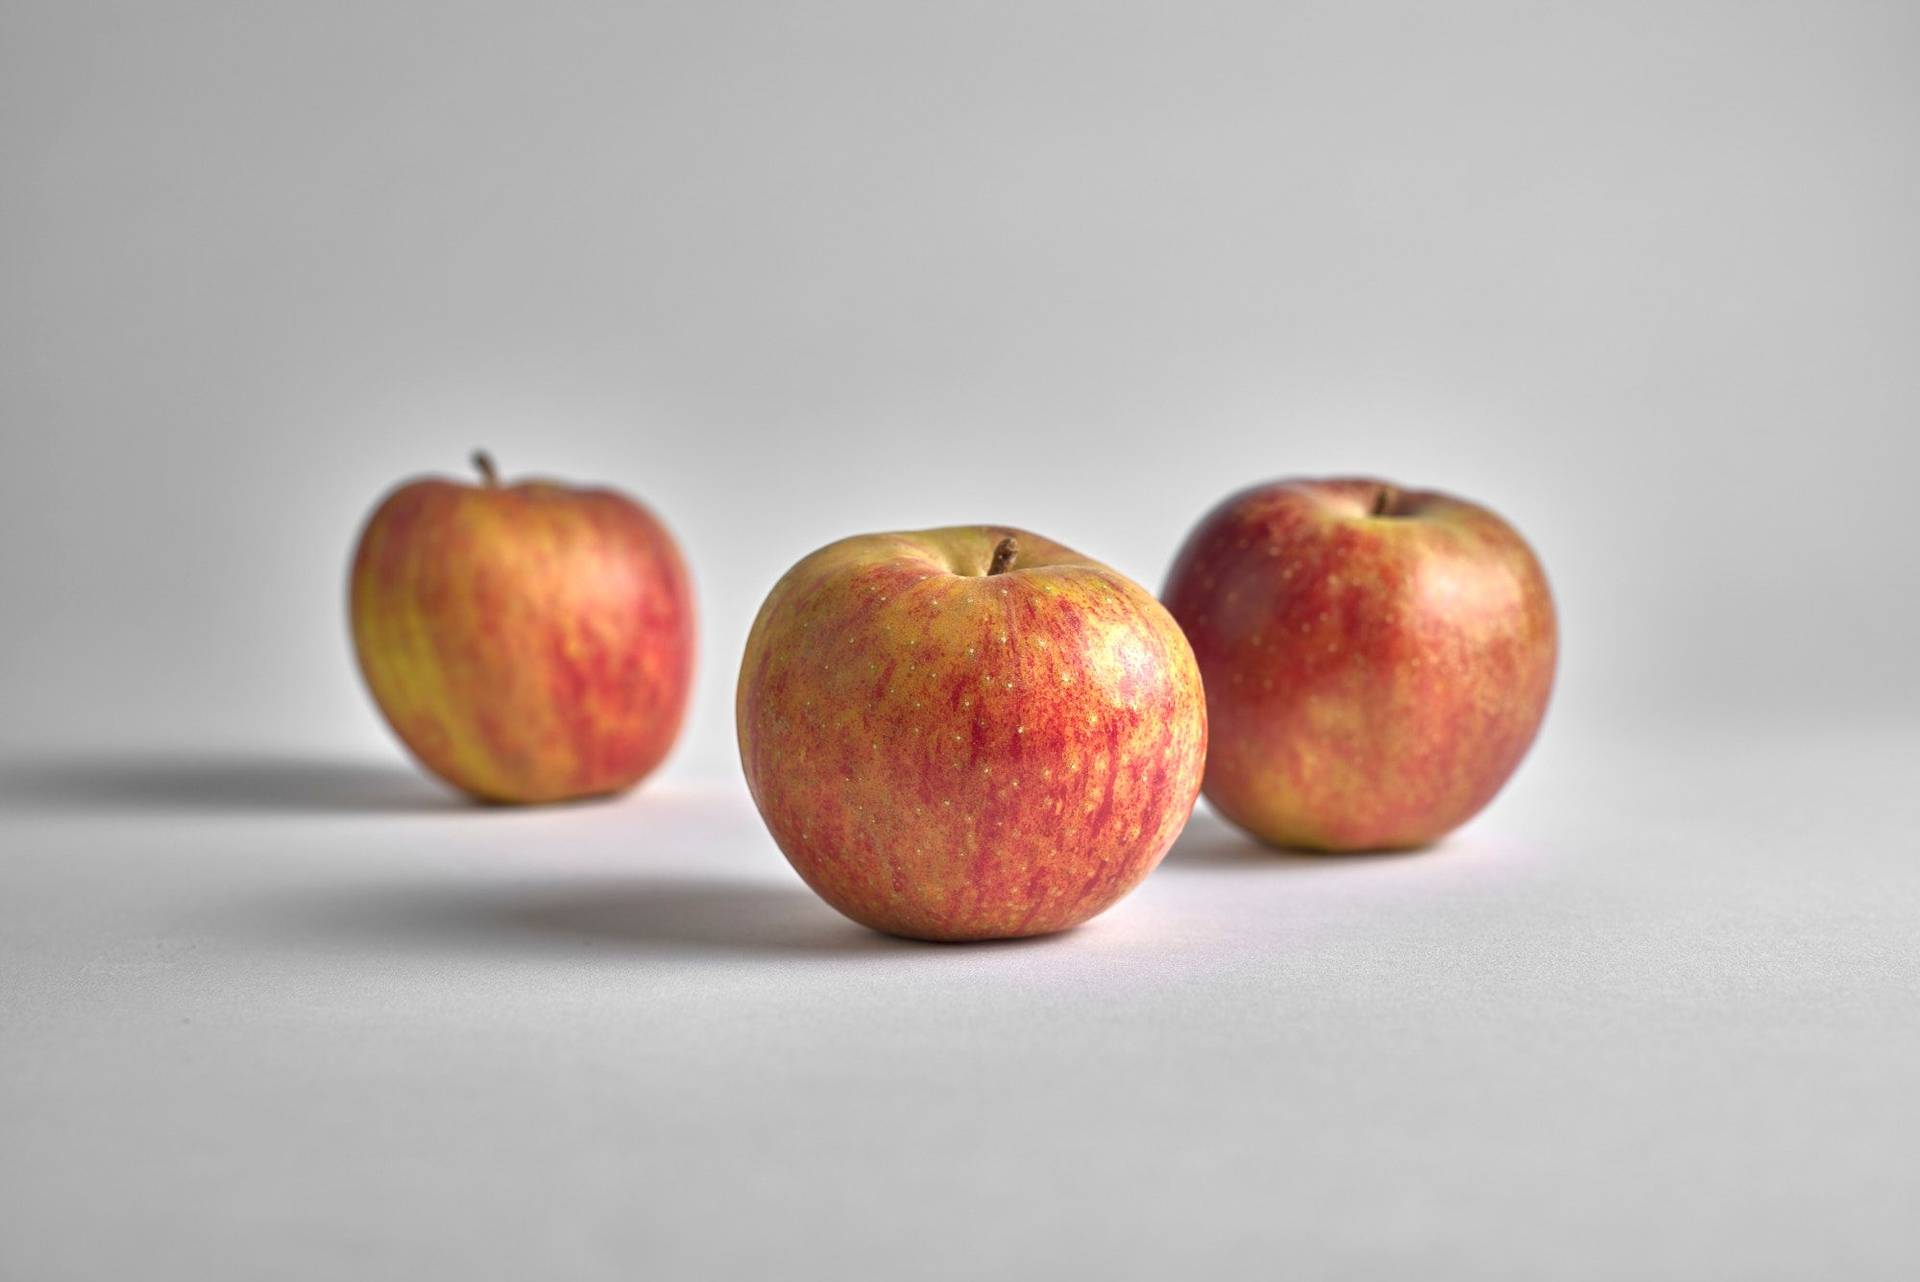 drei rote äpfel auf weißem hintergrund